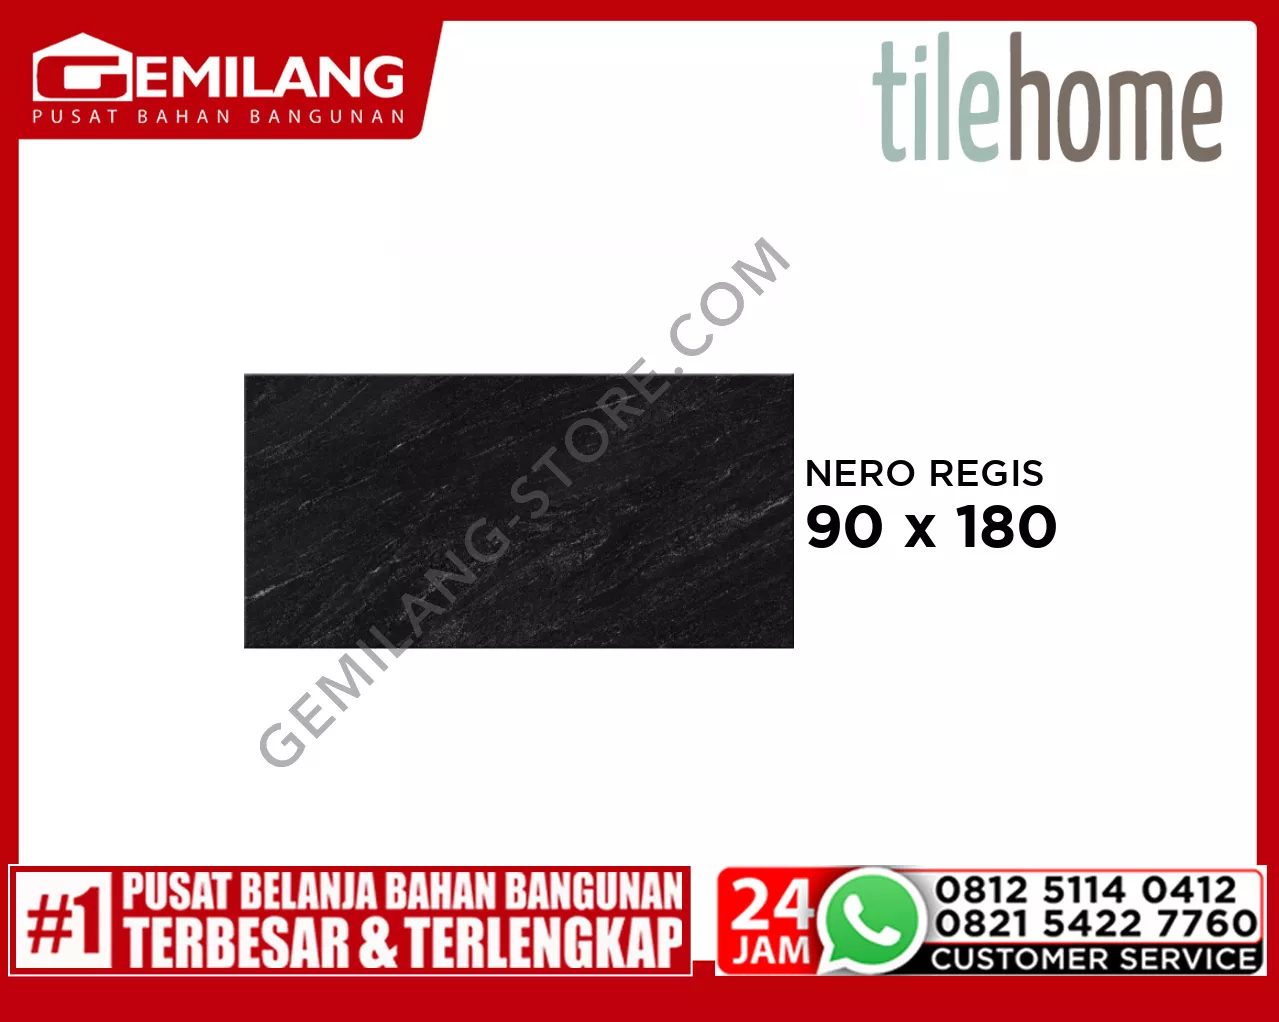 TILEHOME GRANIT NERO REGIS RF189J704A 90 x 180